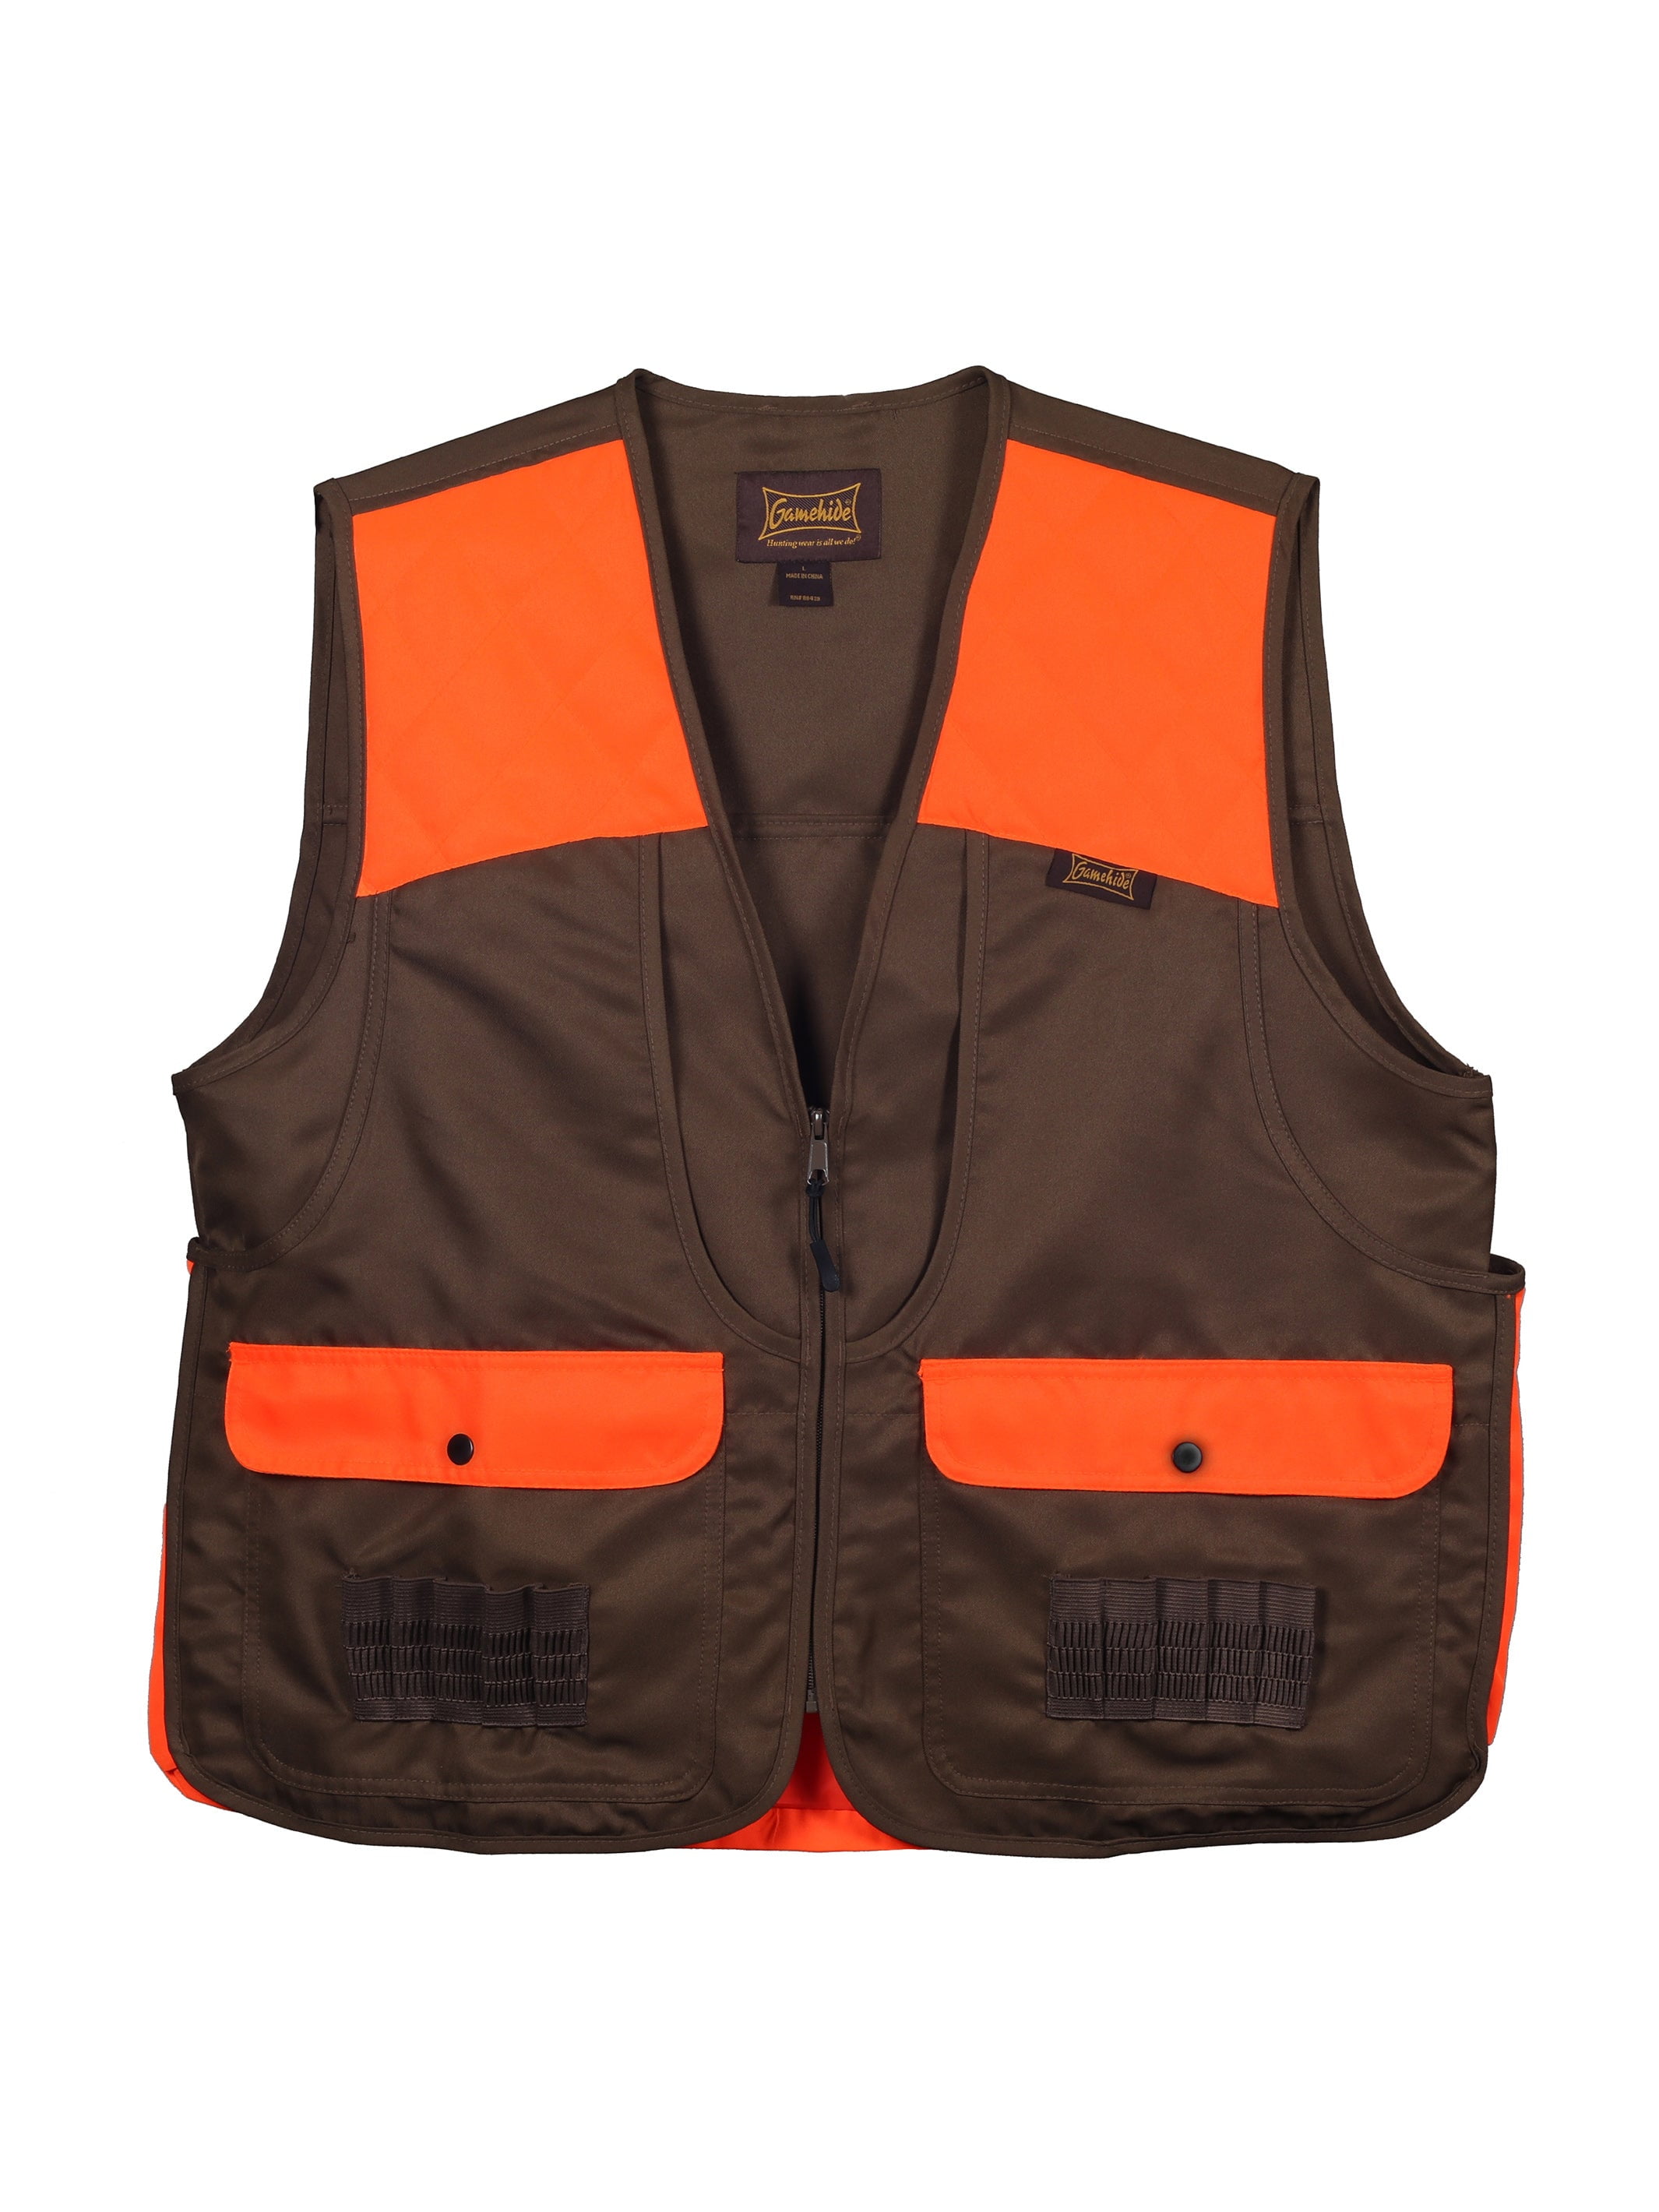 Adult Safety Vest Zip Front Pockets Lightweight WFS Hunting Blaze Orange 